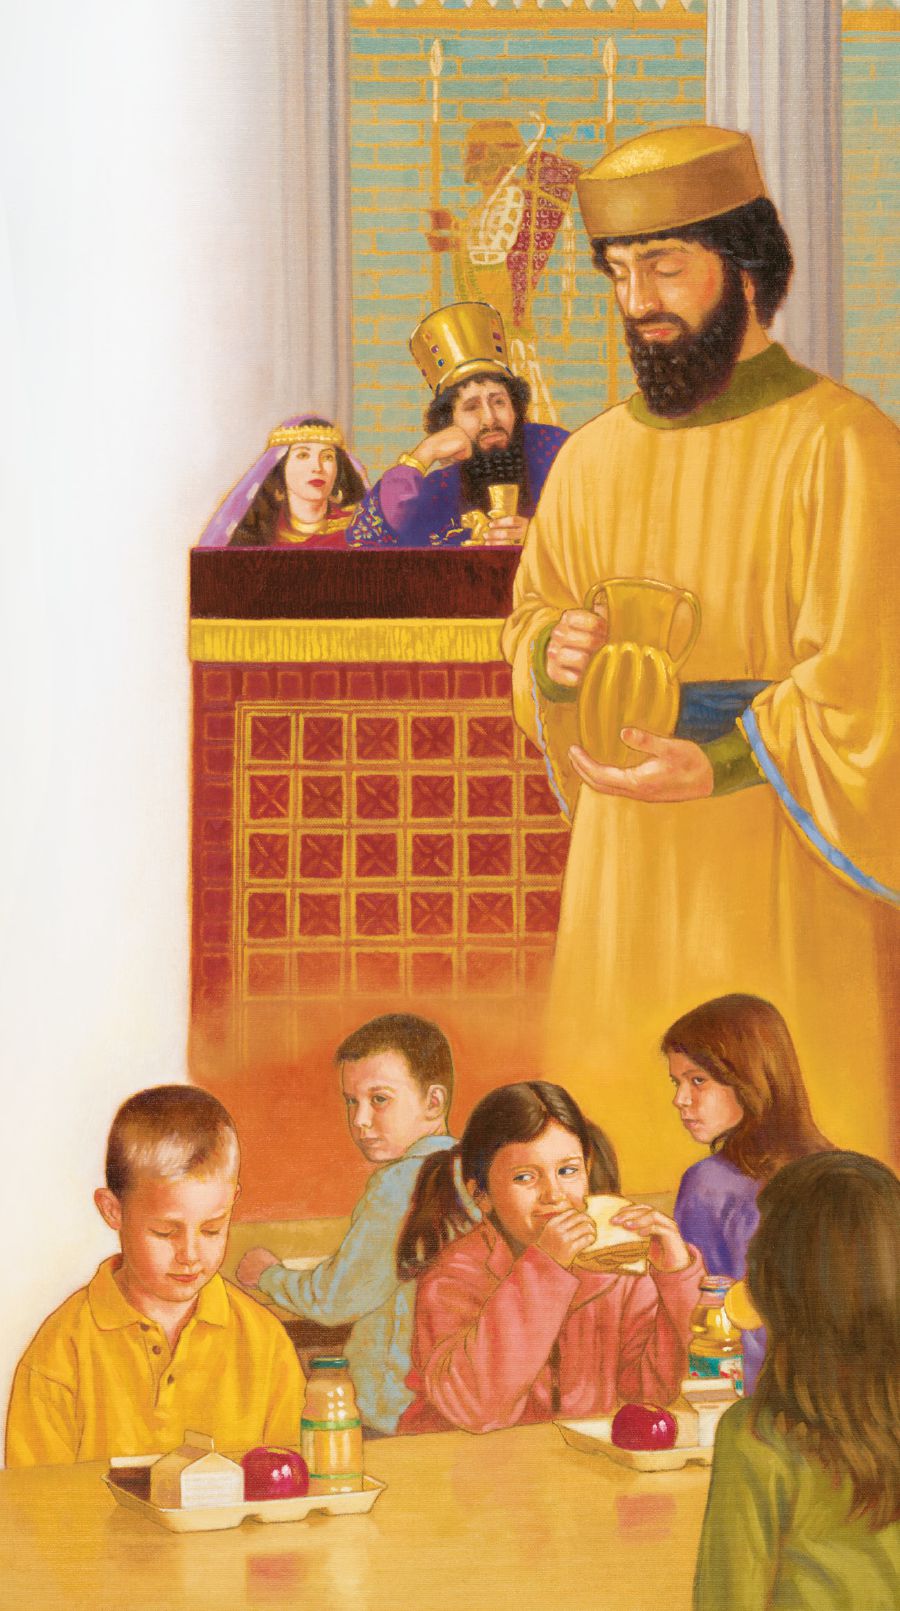 Nehemiasz modli się w myślach; chłopiec w szkole modli się w myślach przed posiłkiem